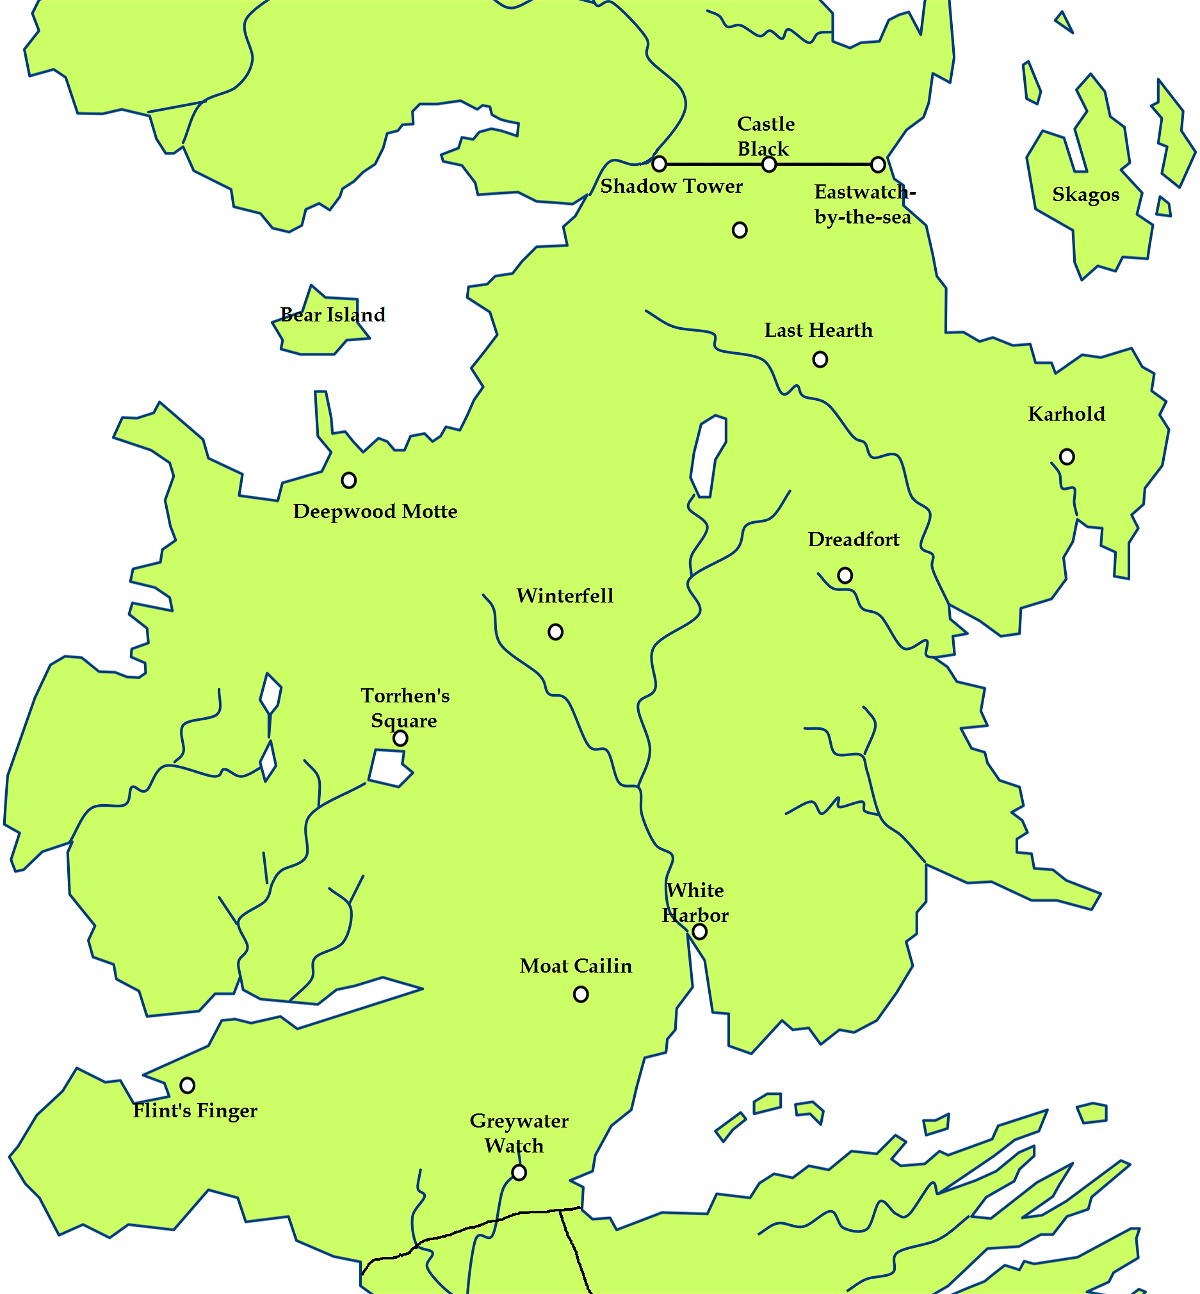 Mappa del Nord di Westeros realizzata dai fan